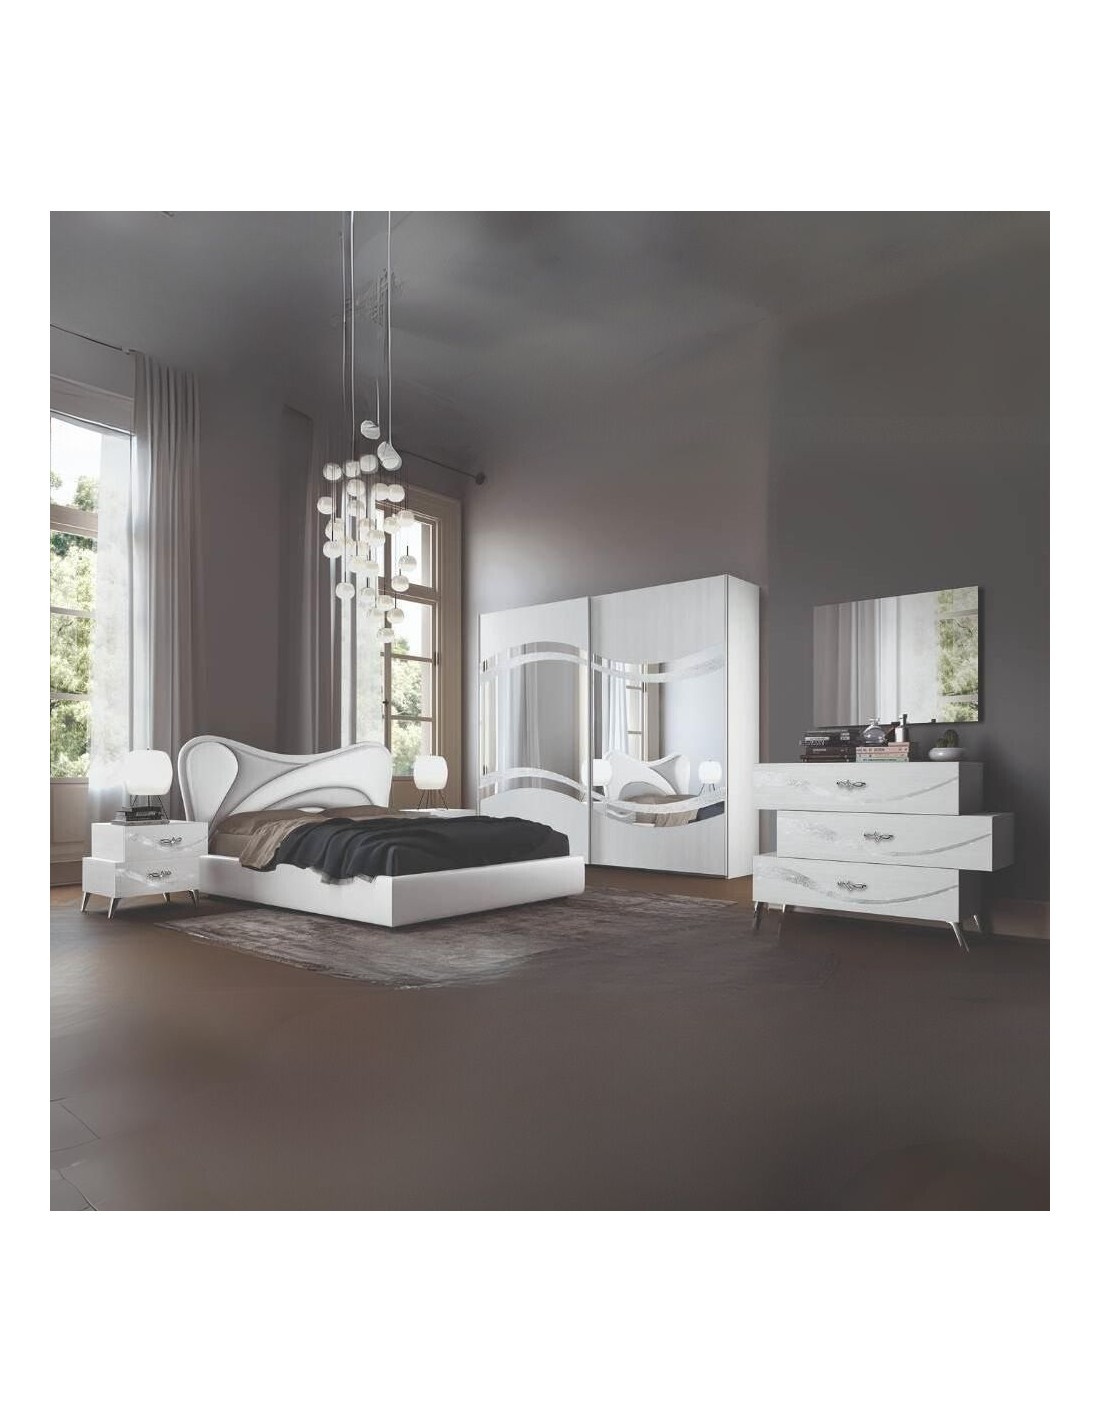 Camera da letto bianco frassinato con decorazioni argento Delia